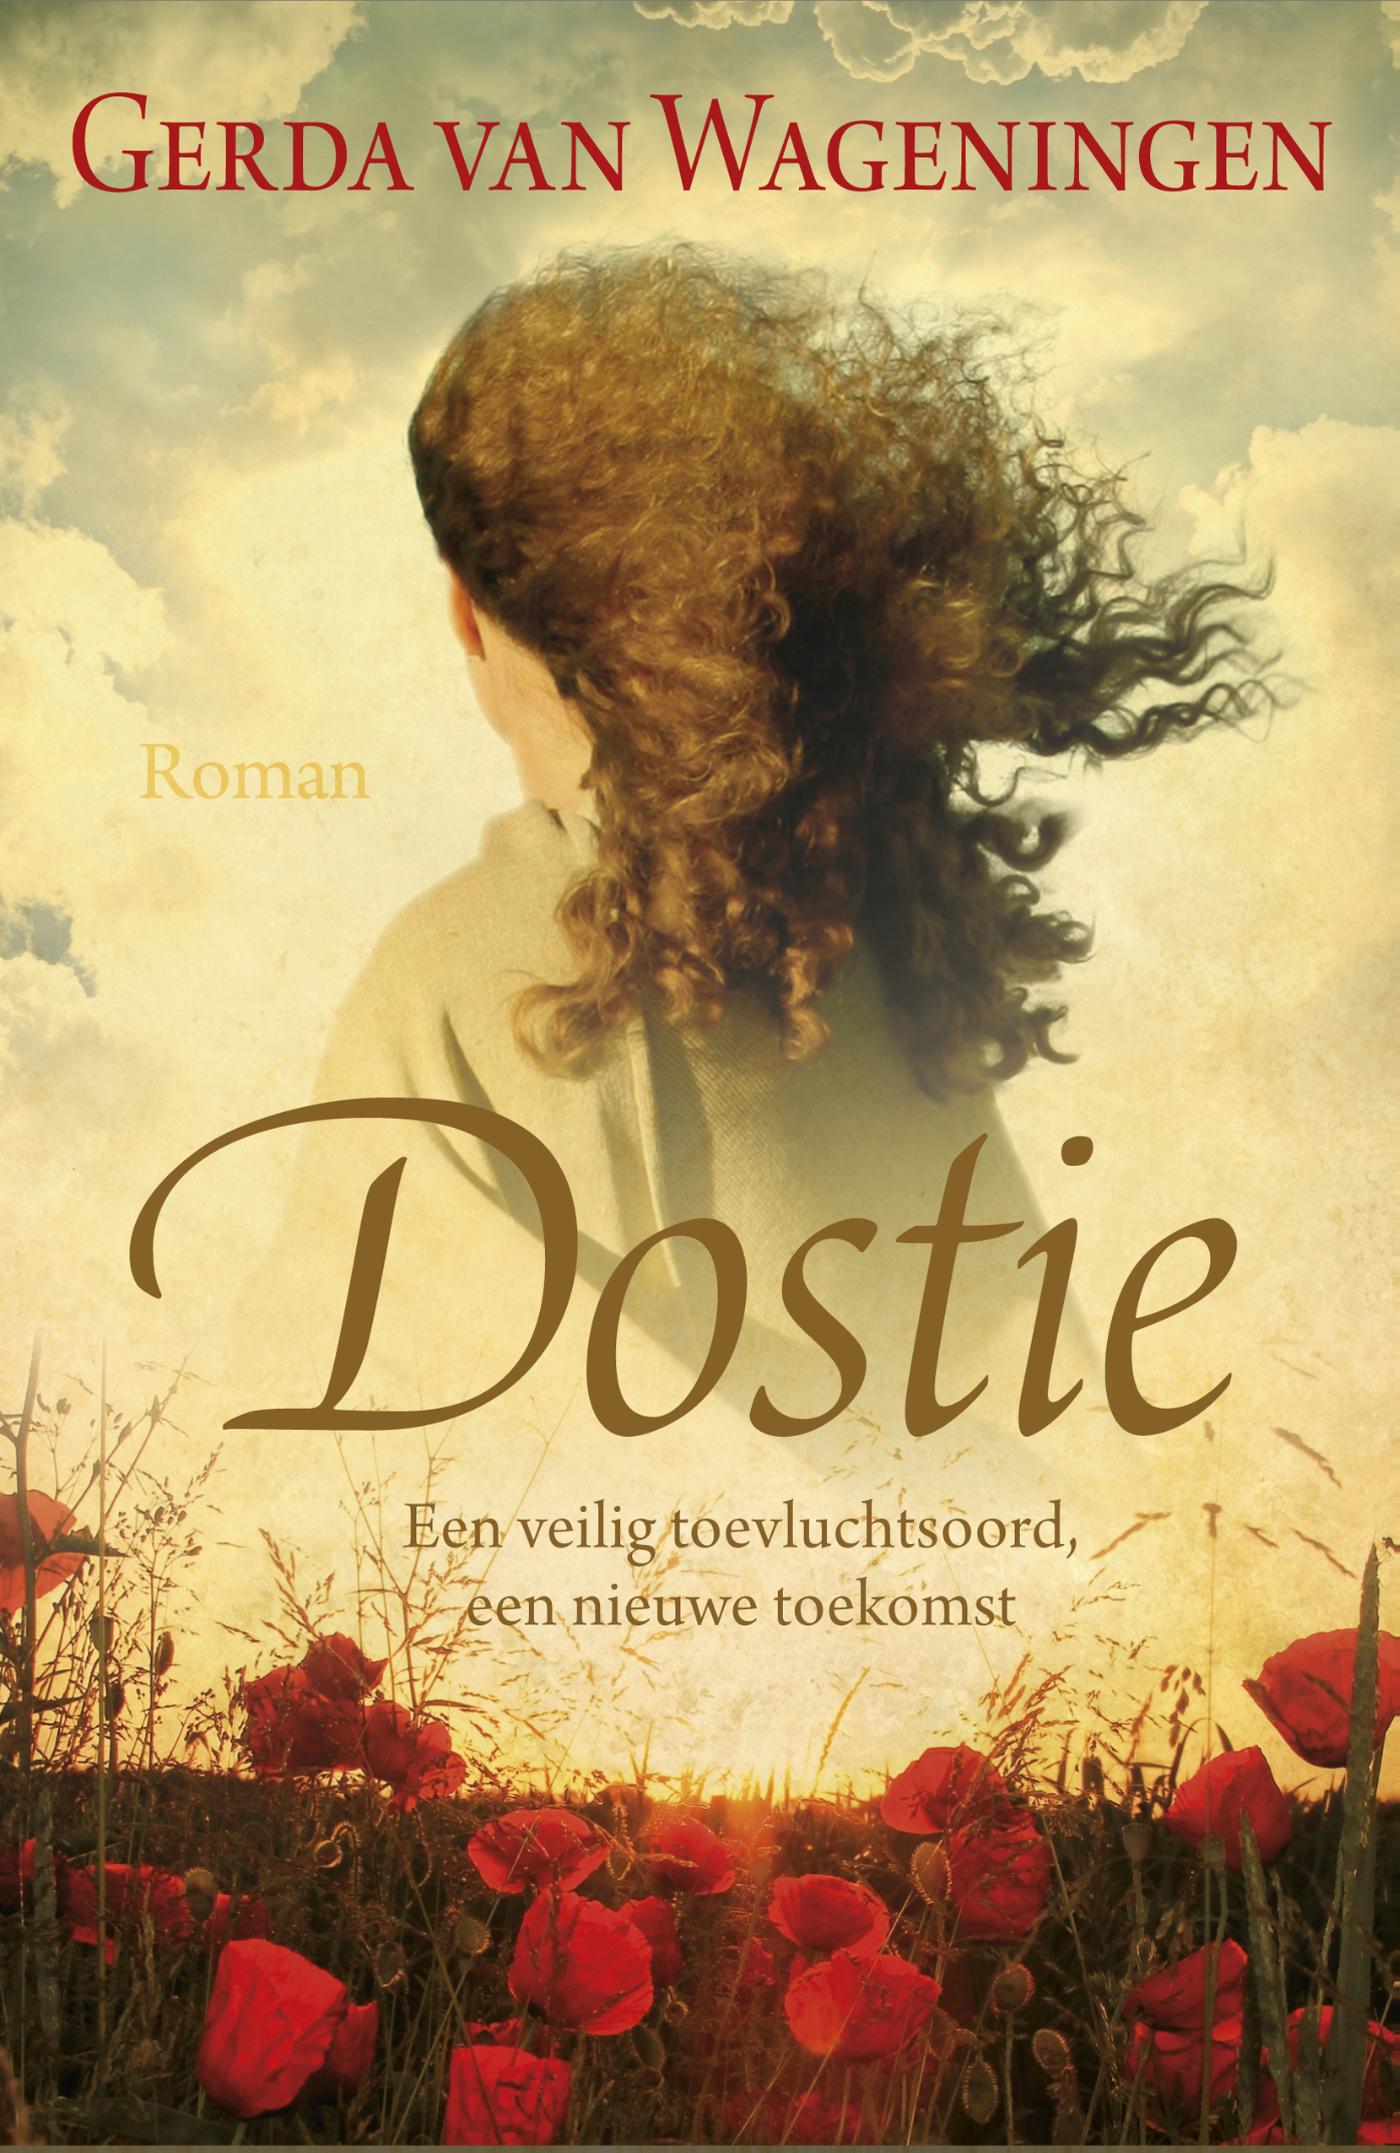 Dostie (Ebook)